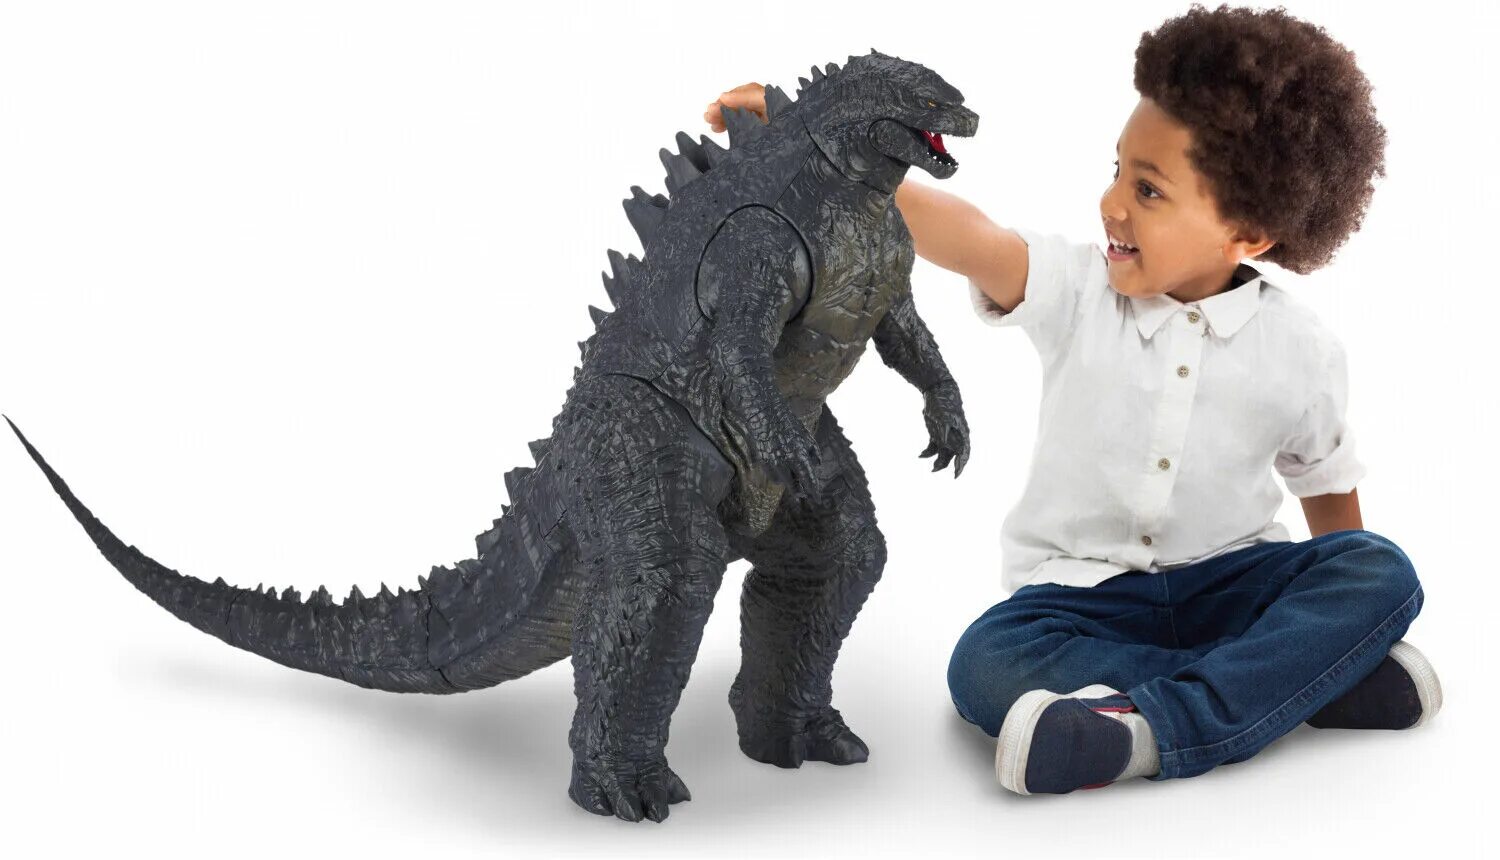 Giant toy. Giant Godzilla игрушка. Годзилла 60 см большая игрушка. Шин Годзилла игрушка 60 см. Игрушки Годзилла 2 Король монстров.